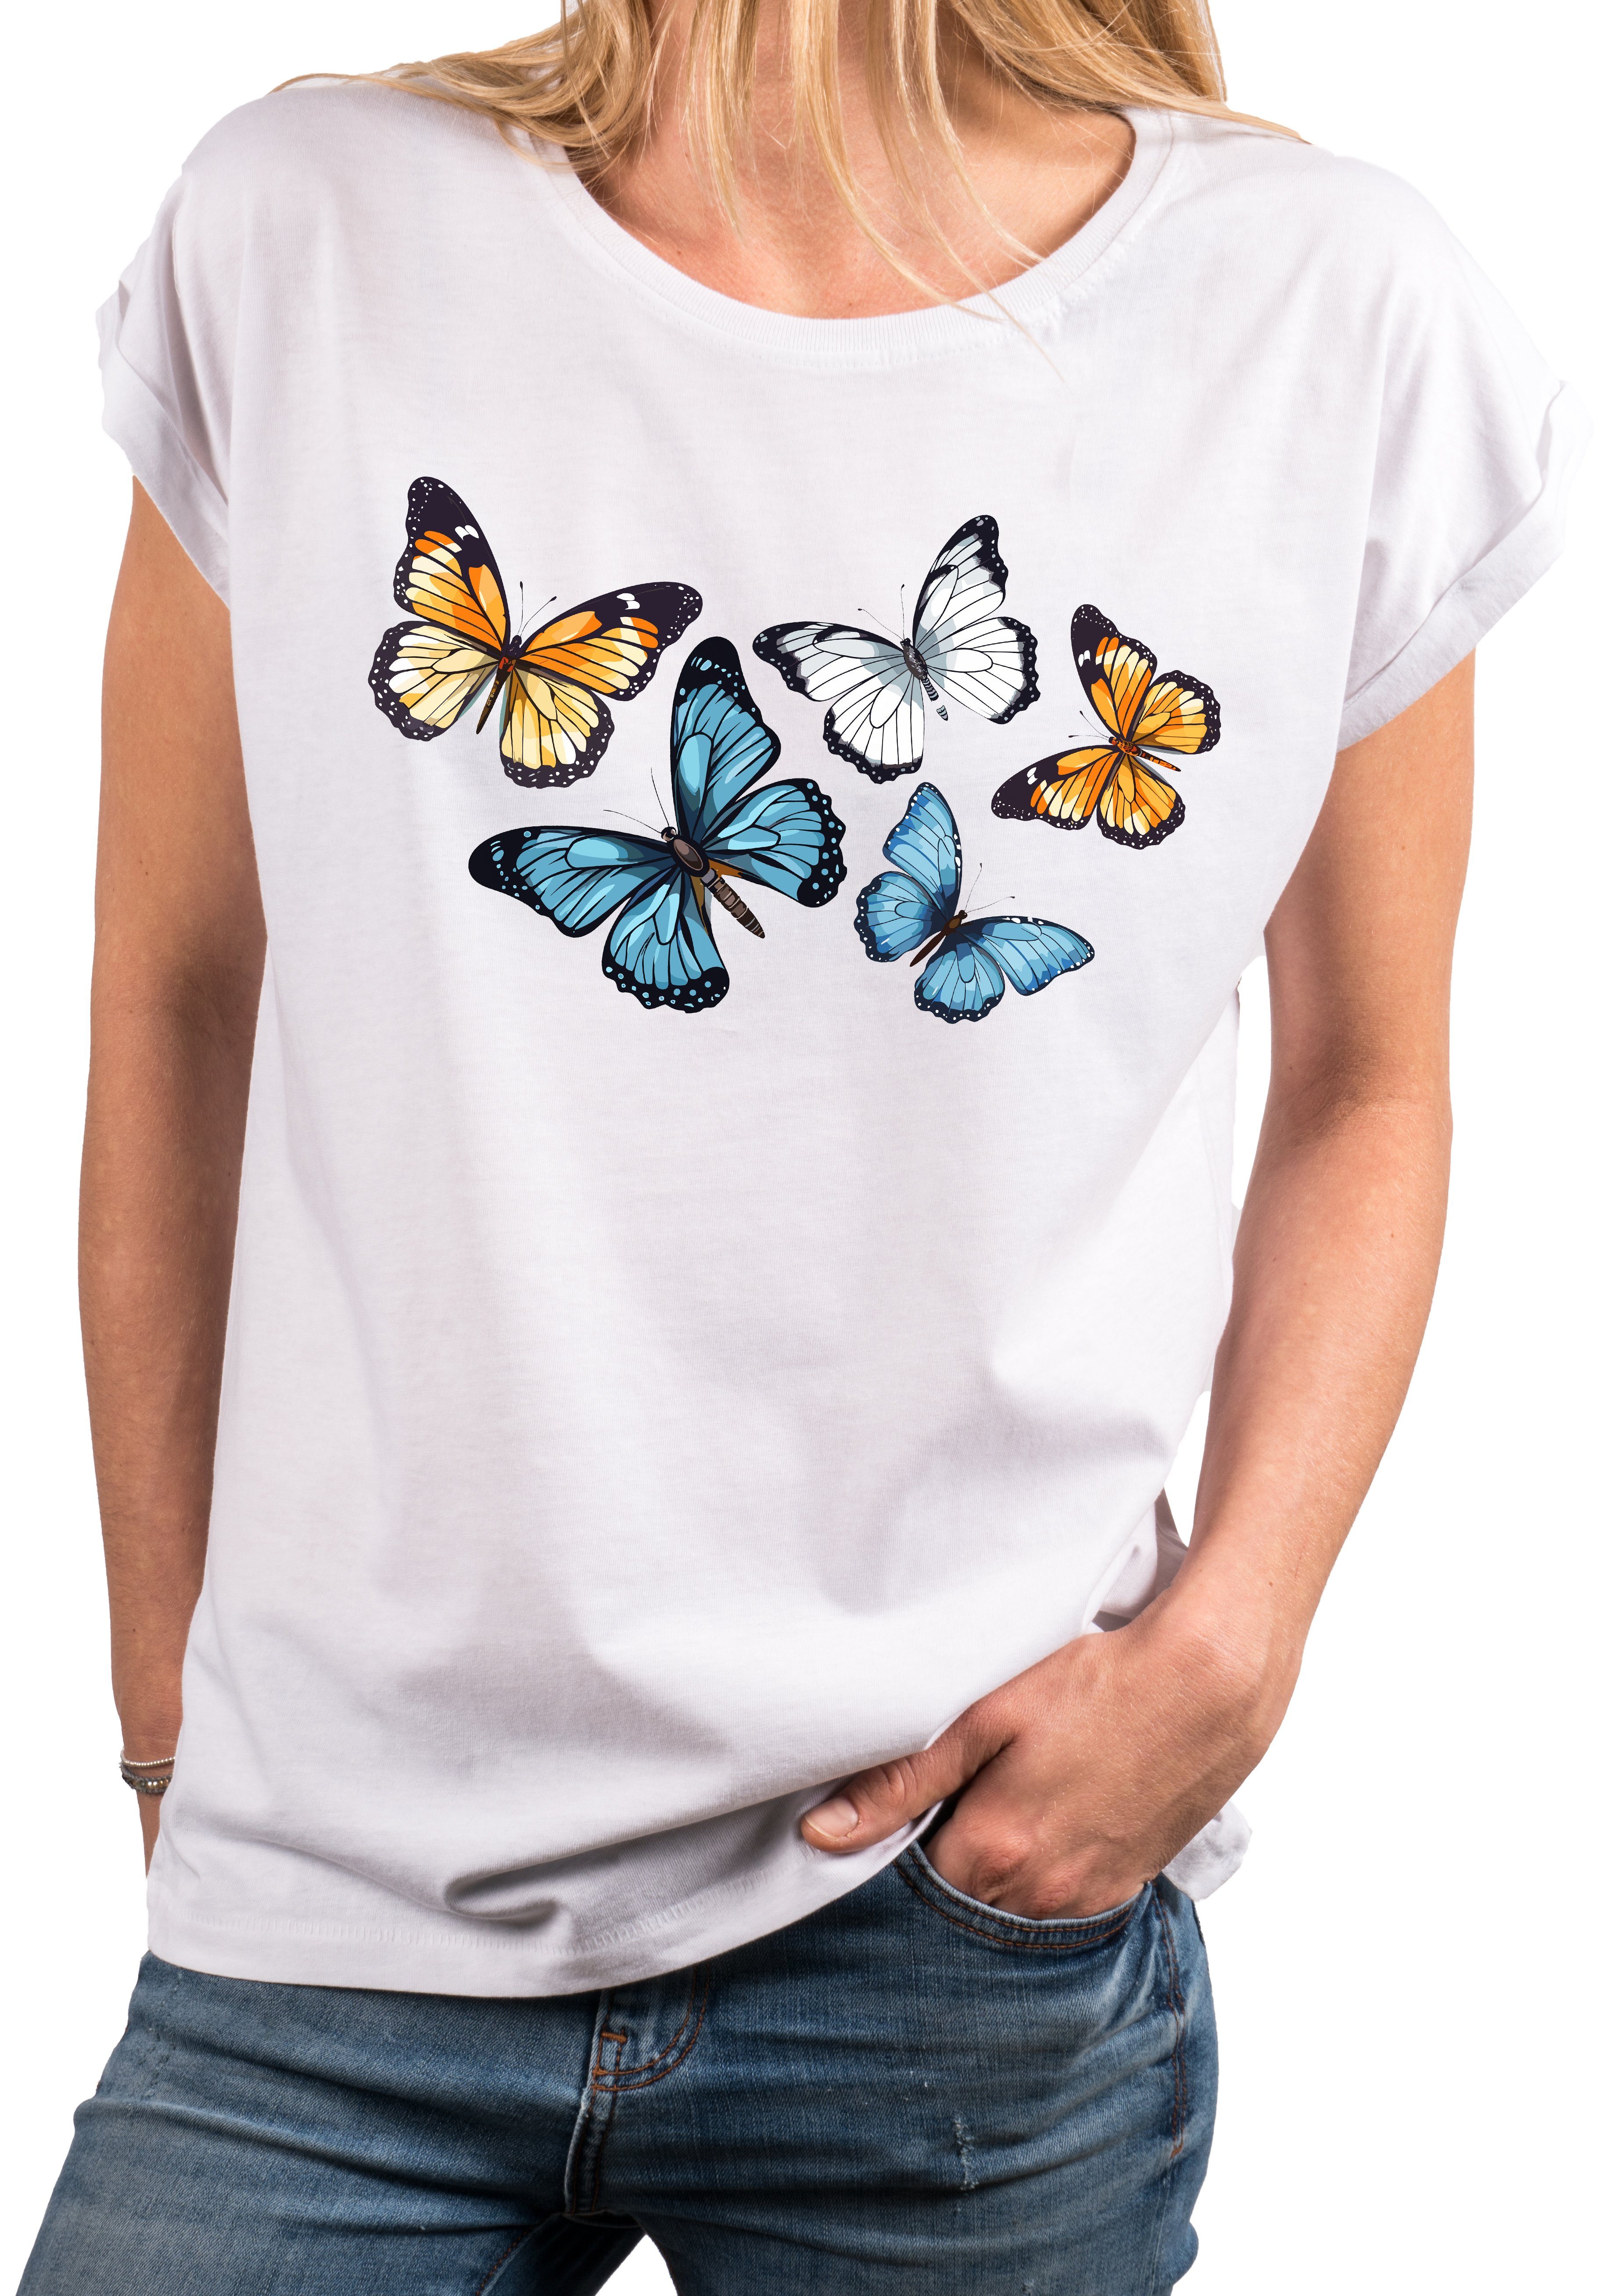 große Schmetterling Print-Shirt MAKAYA Baumwolle mit Sommer Aufdruck Größen, Weiß Kurzarm Damen Top Butterfly Baumwolle Druck,